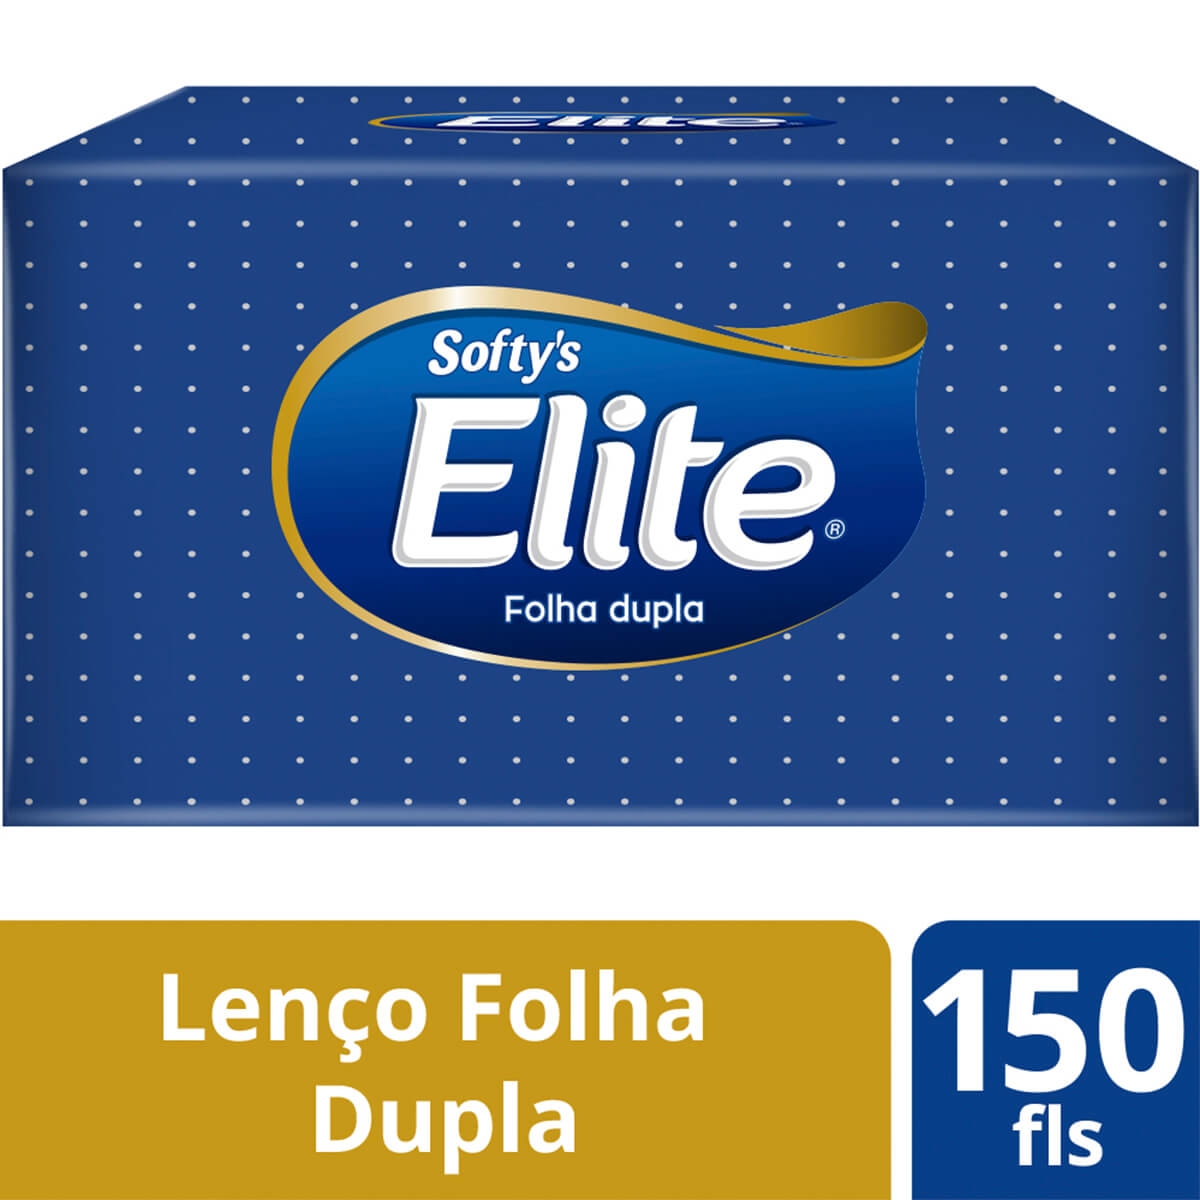 Lenço de Papel Softy's Elite Folha Dupla com 150 unidades